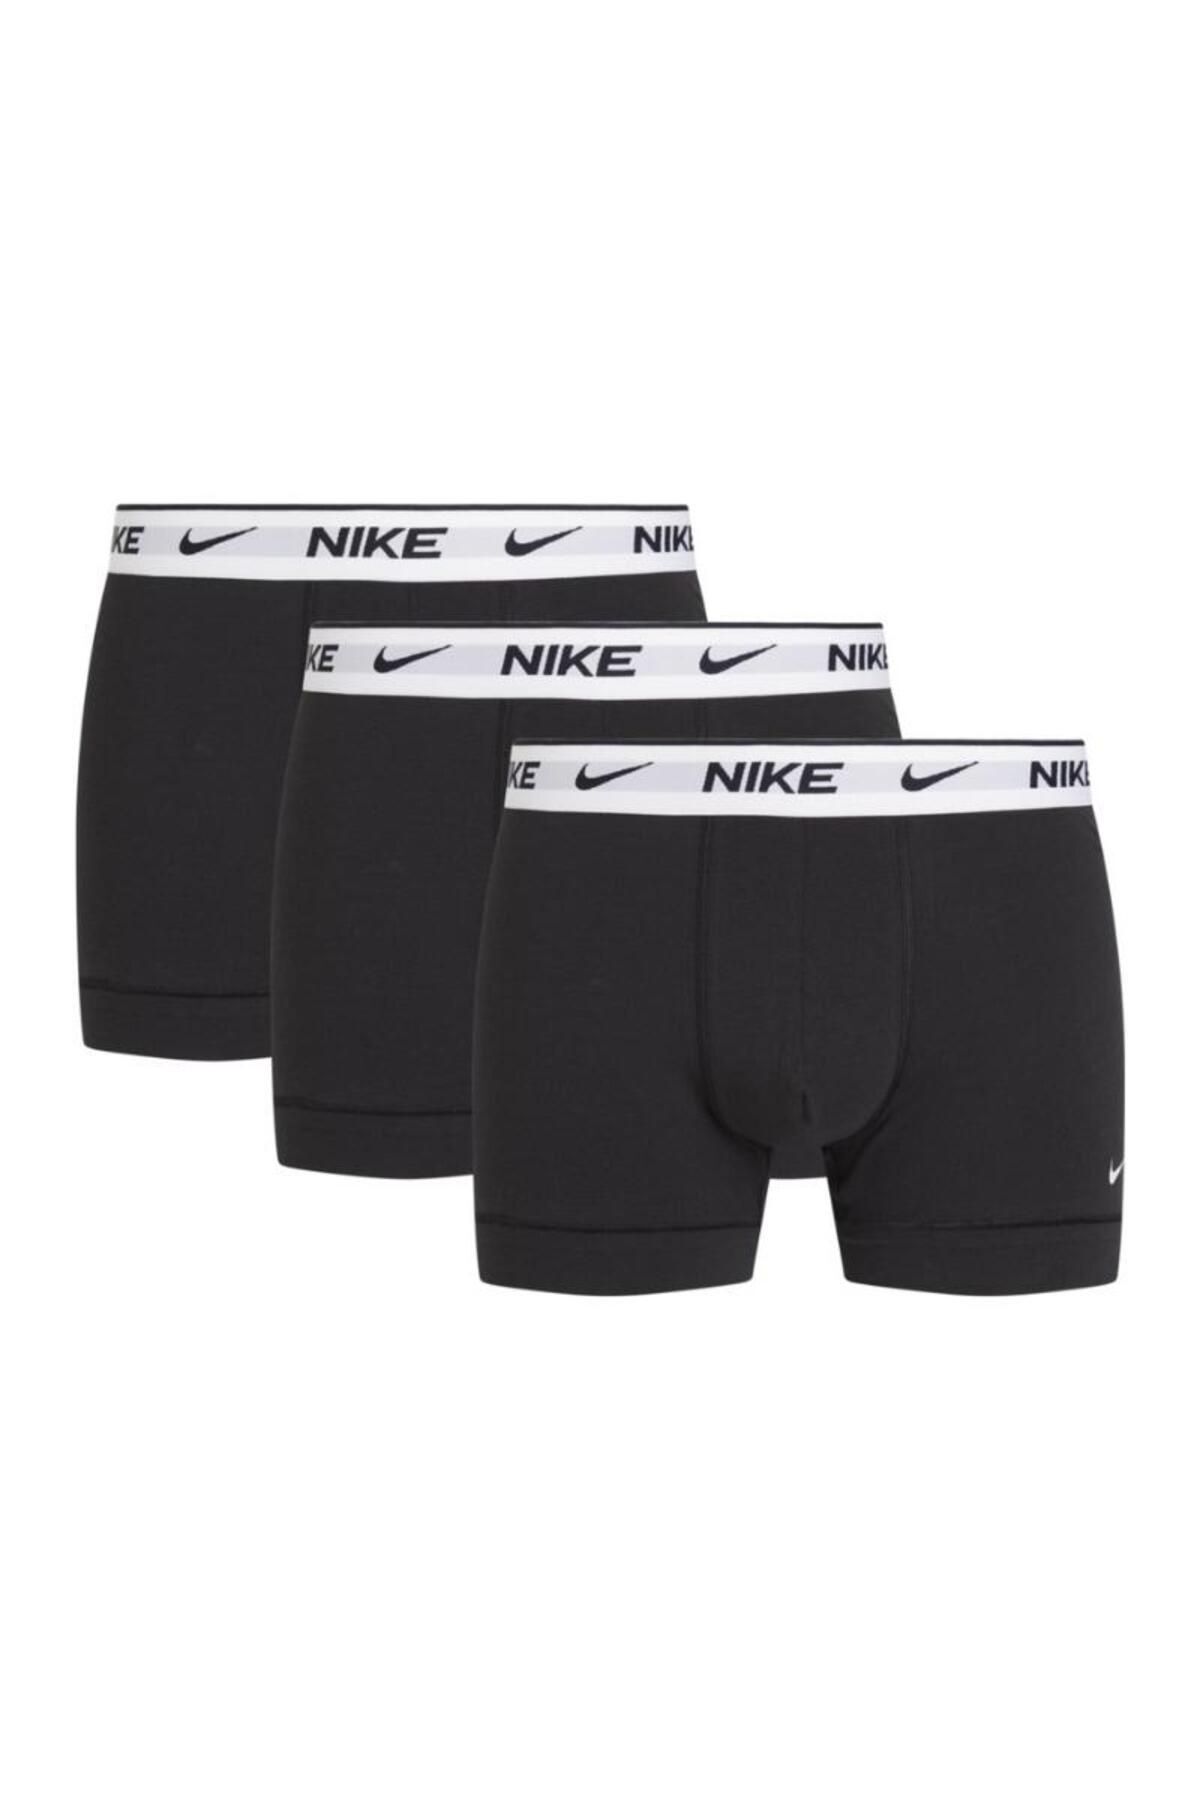 Nike Erkek Siyah Boxer 0000ke1008859-siyah